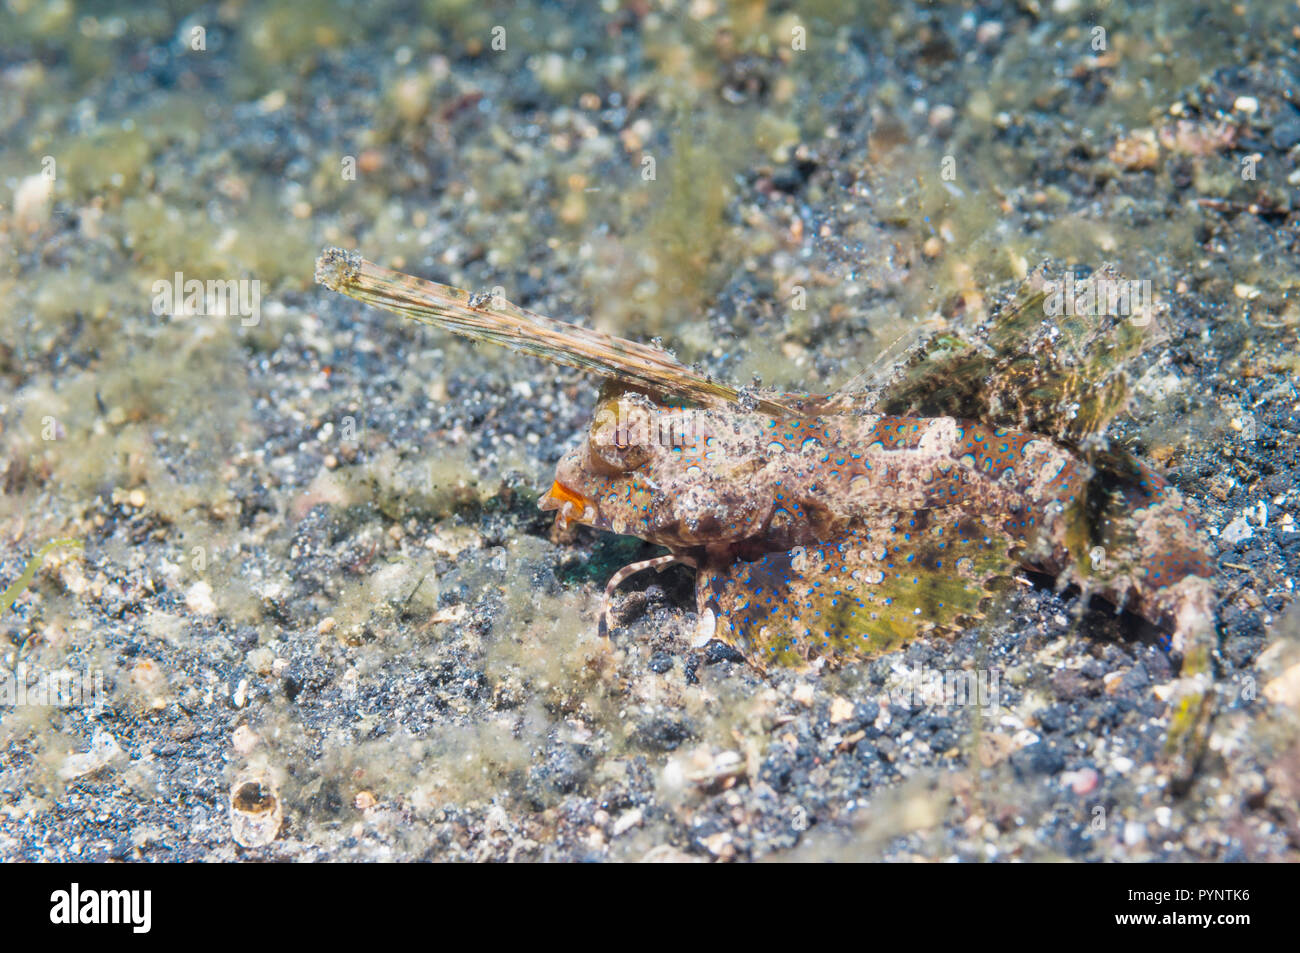 Fingered dragonet [Dactyolopus dactylopus].  Lembeh Strait, North Sulawesi, Indonesia. Stock Photo